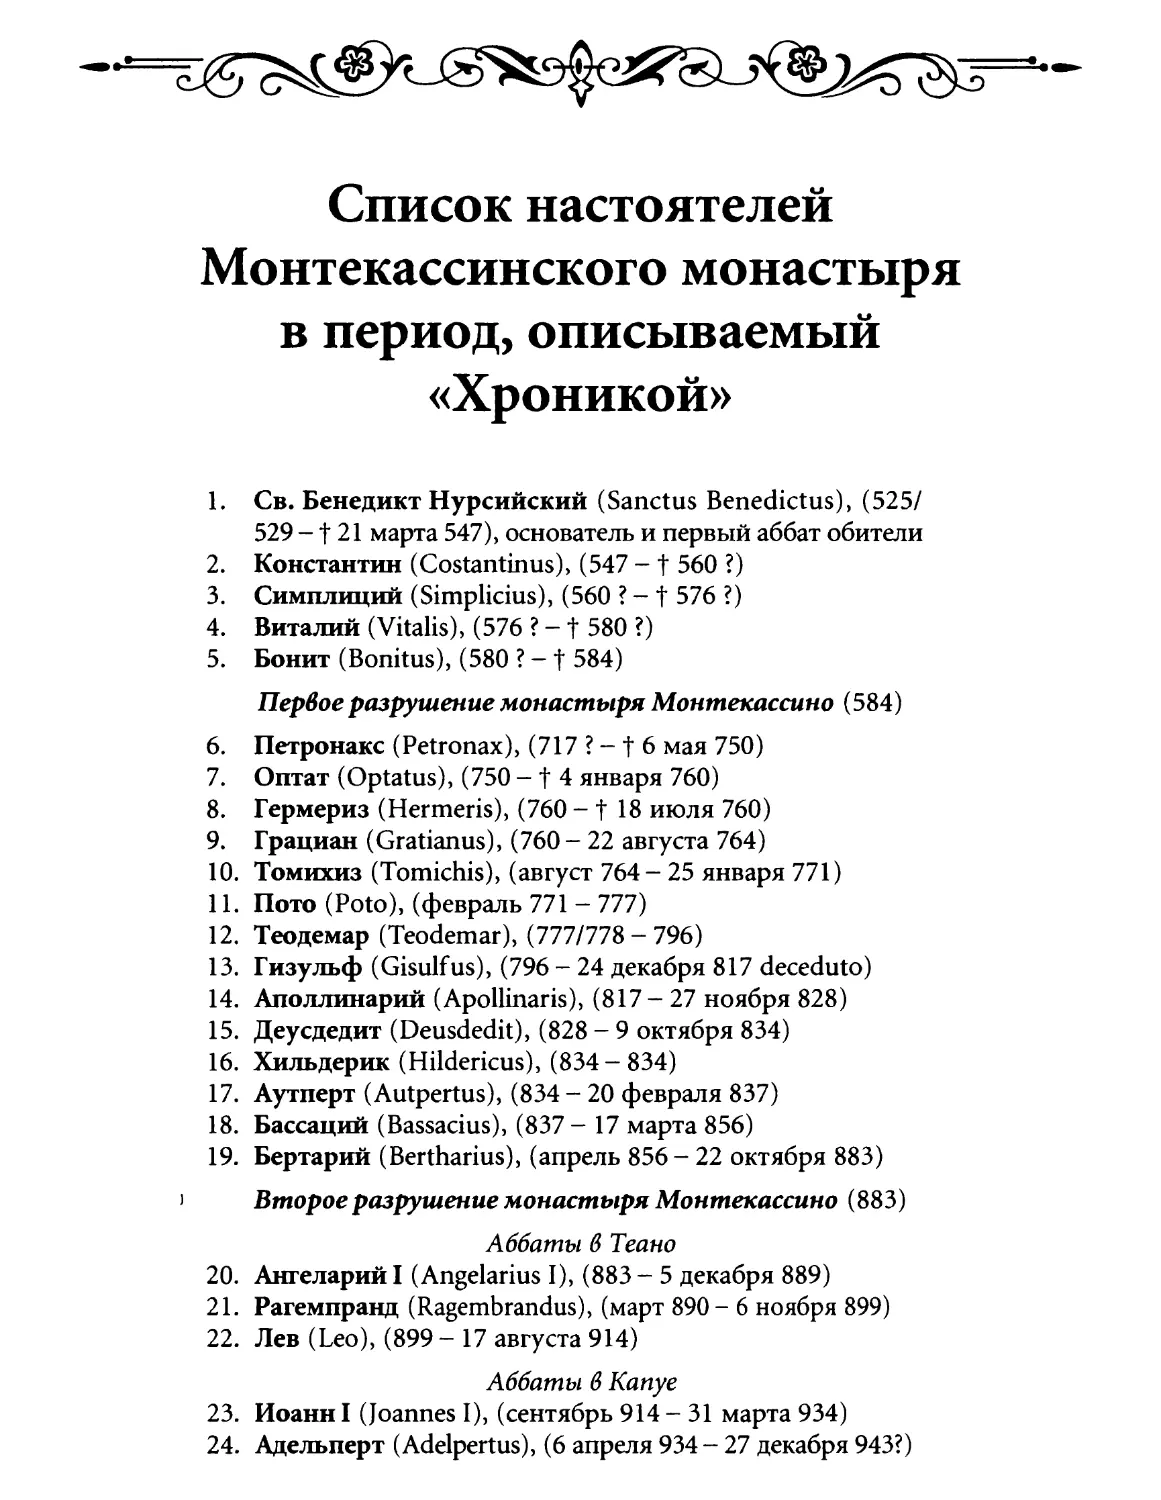 Список настоятелей Монтекассинского монастыря в период, описывамый \